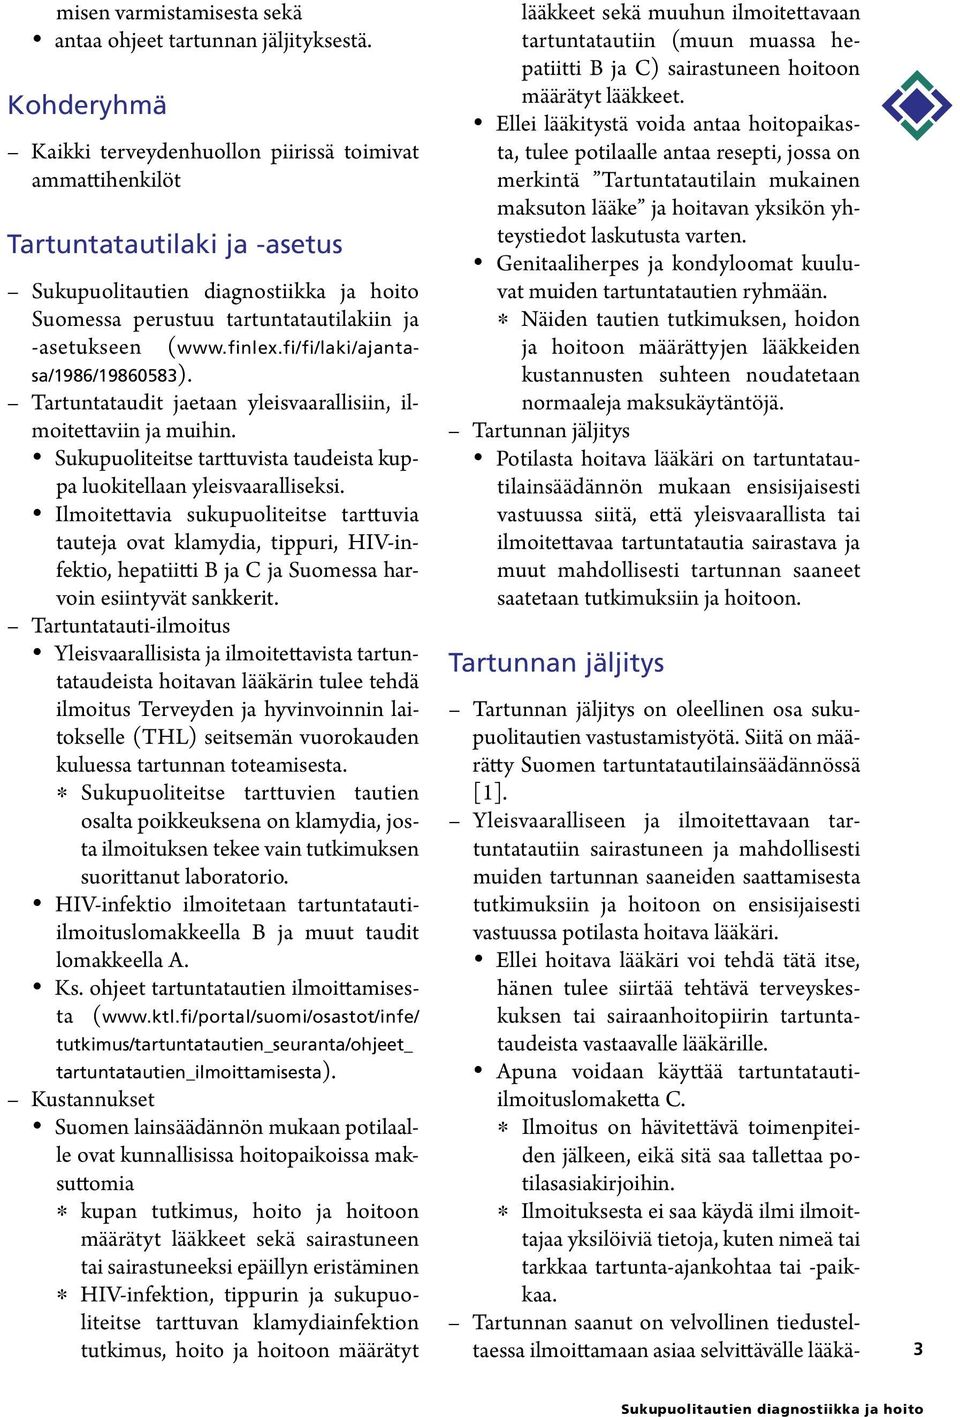 finlex.fi/fi/laki/ajantasa/1986/19860583). Tartuntataudit jaetaan yleisvaarallisiin, ilmoitettaviin ja muihin. Sukupuoliteitse tarttuvista taudeista kuppa luokitellaan yleisvaaralliseksi.